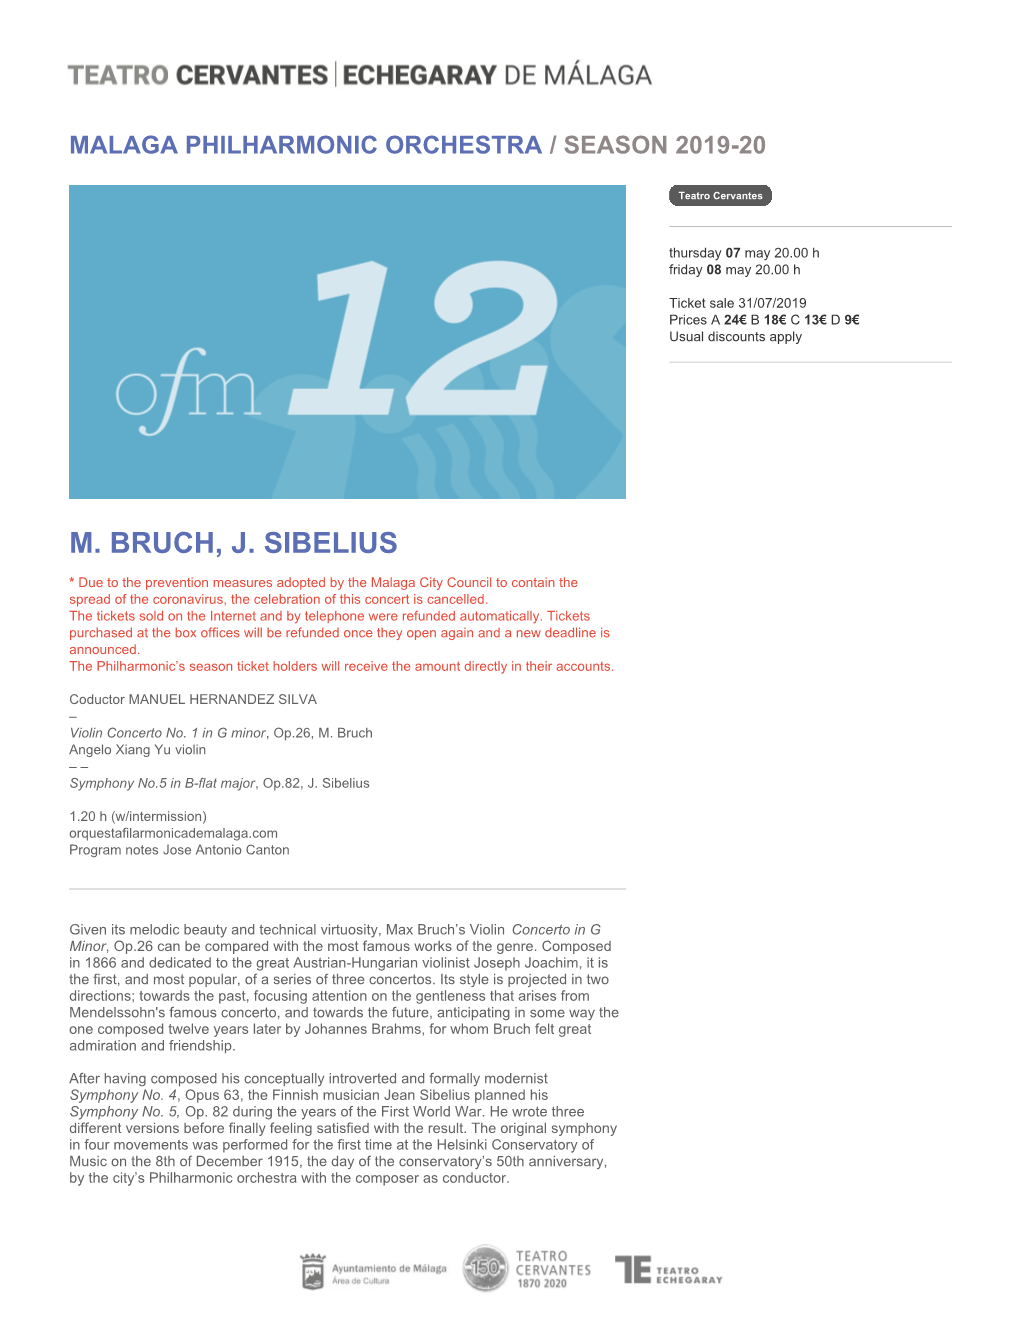 M. Bruch, J. Sibelius